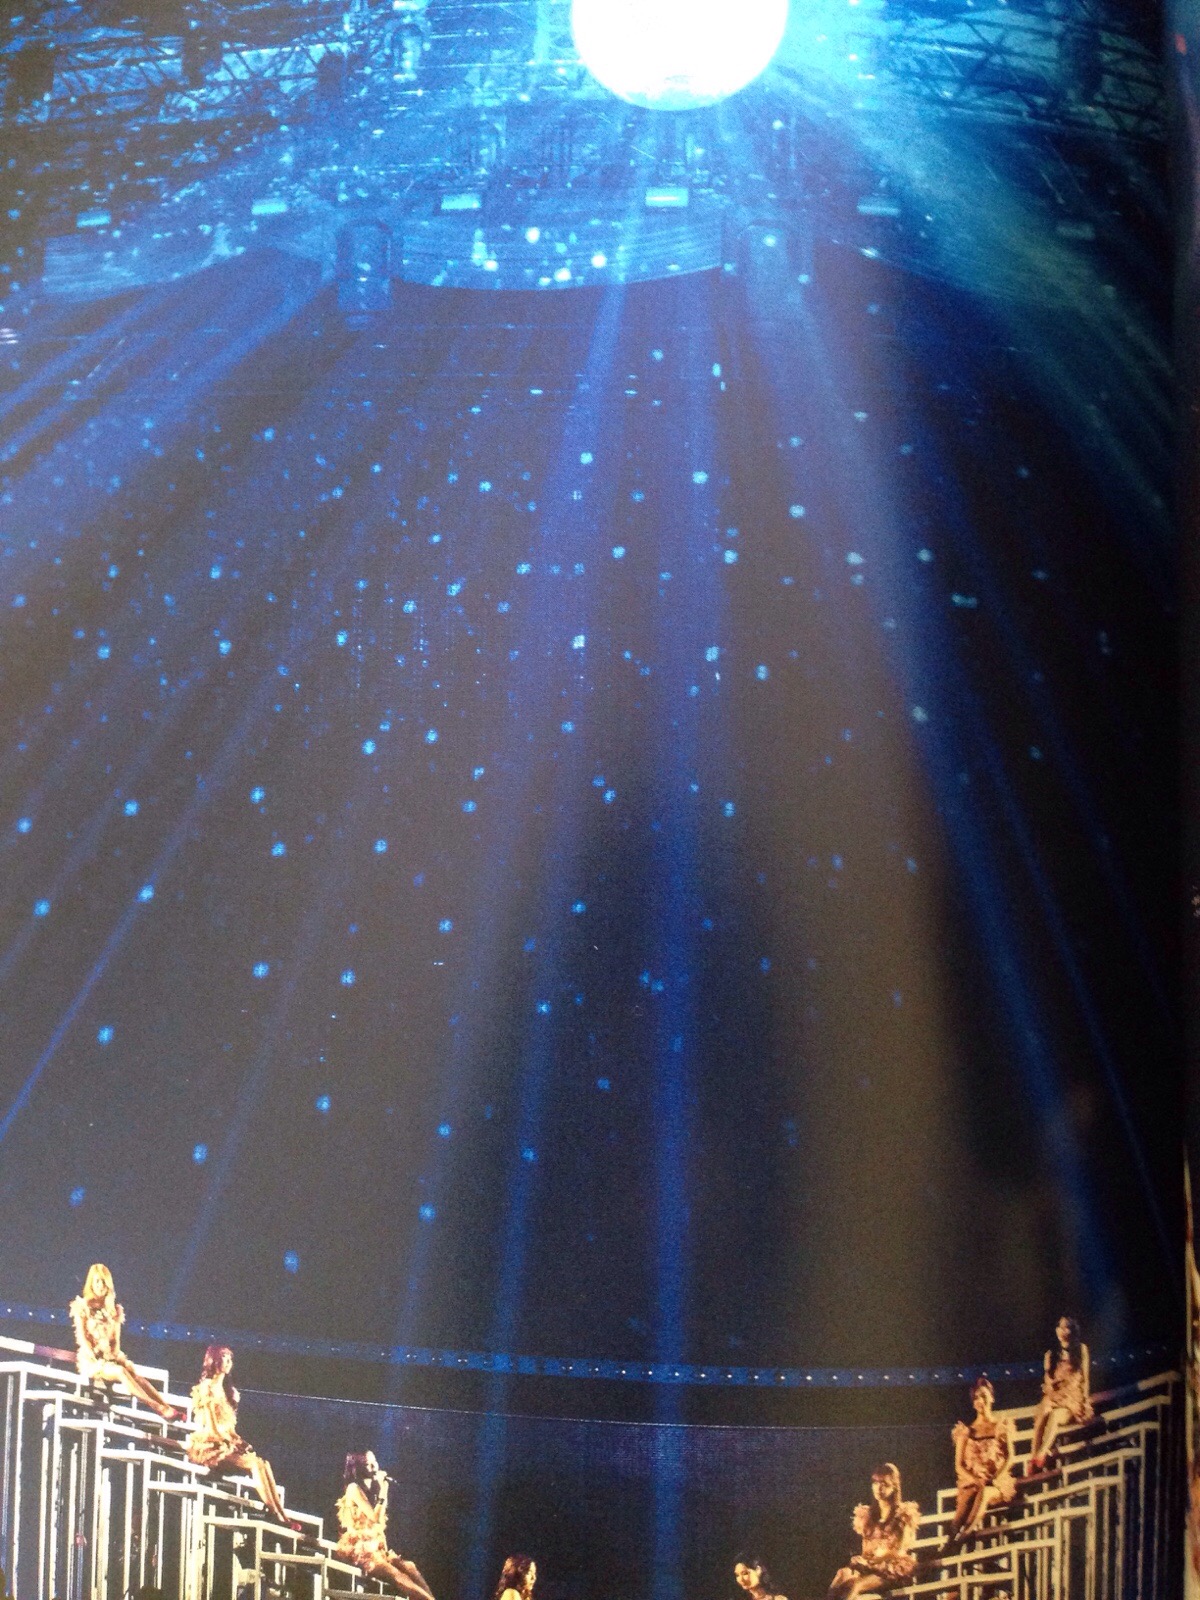 [PIC][09-12-2014]Hình ảnh mới nhất từ "GIRLS' GENERATION THE BEST LIVE AT TOKYO DOME" của SNSD  - Page 3 6b4fef46jw1eqoneu5kc2j20xc18gapr